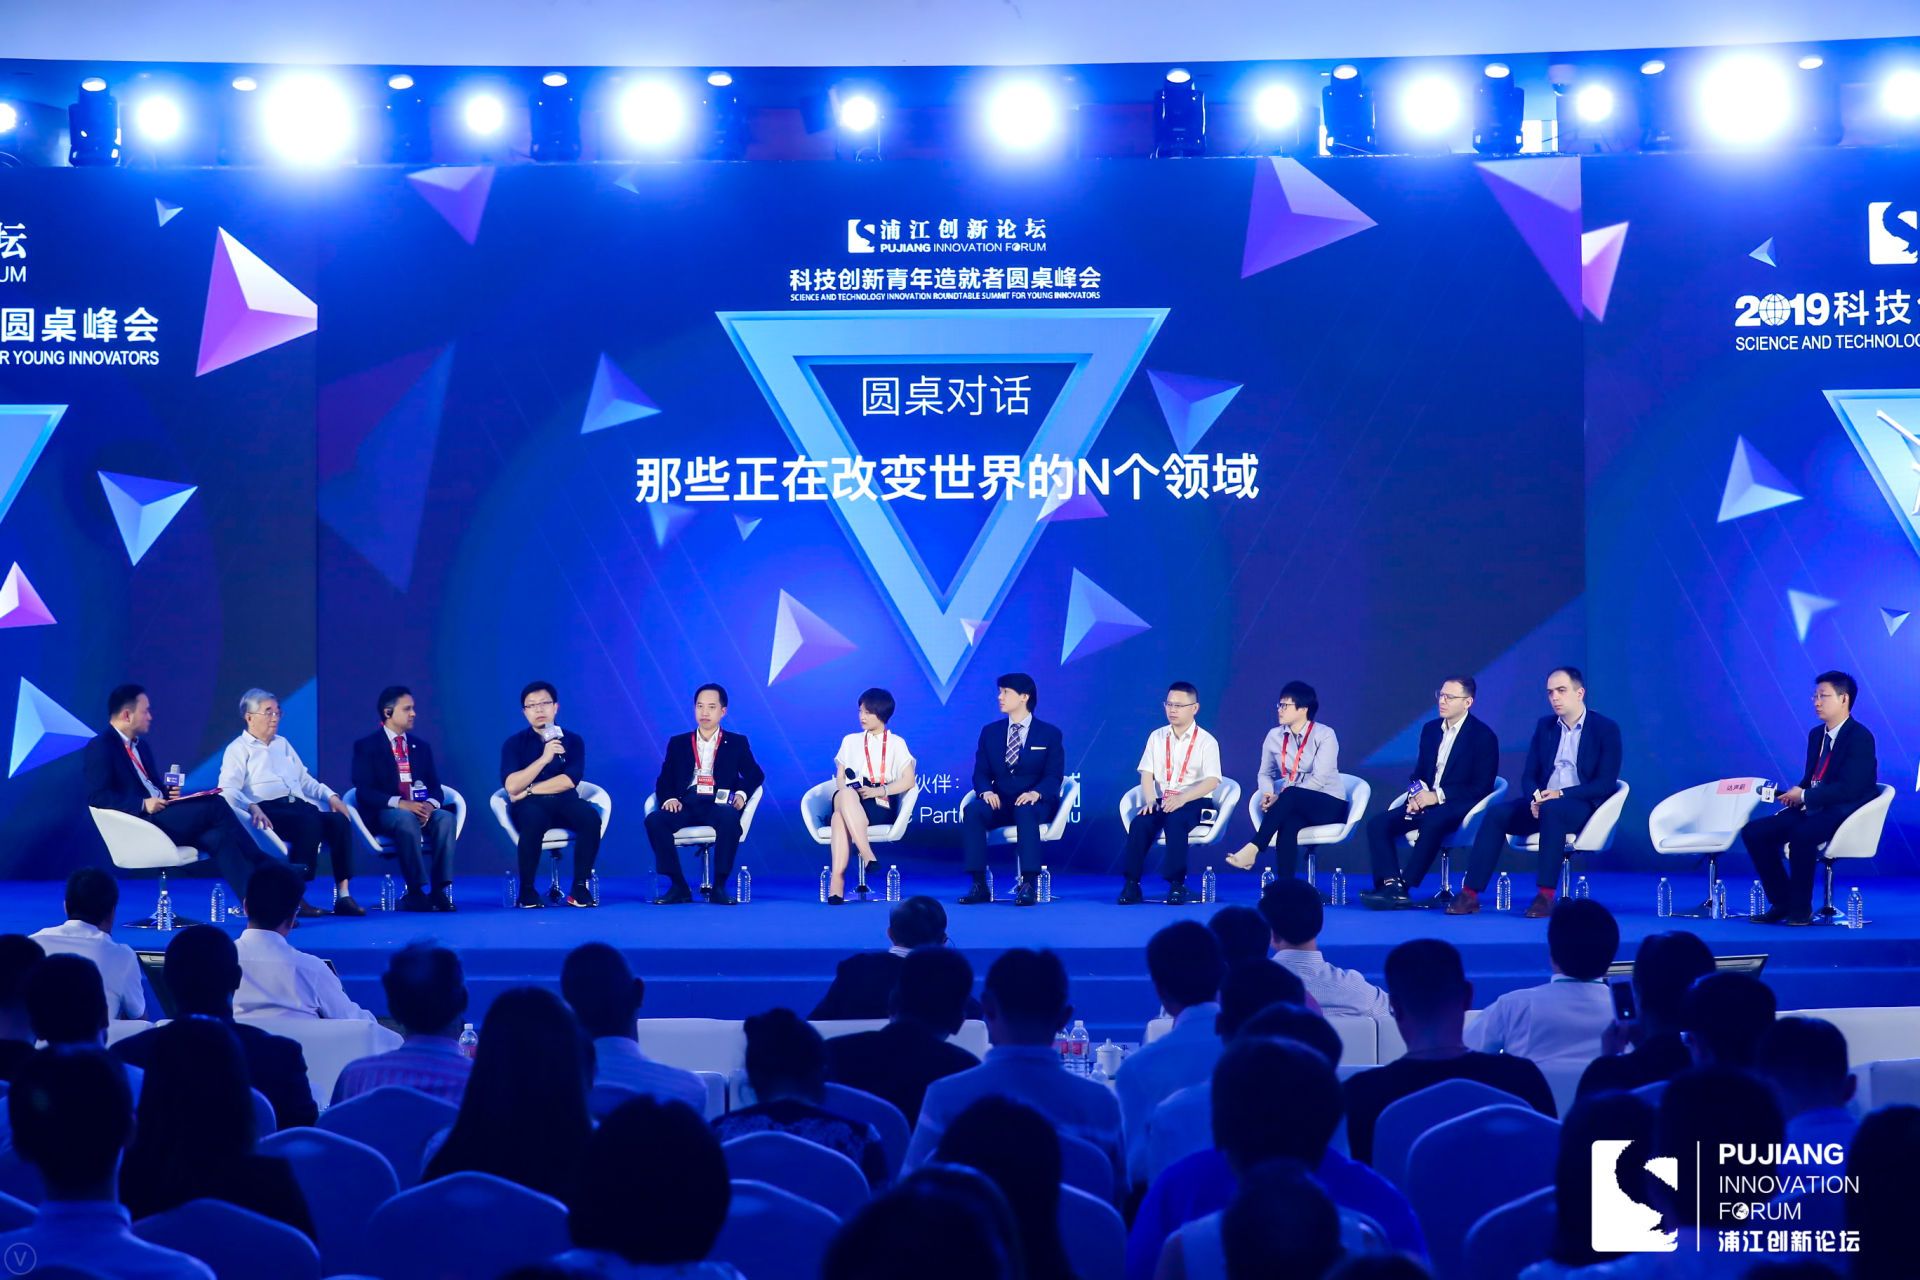 2019浦江創新論壇·科技創新青年造就者圓桌峰會舉辦